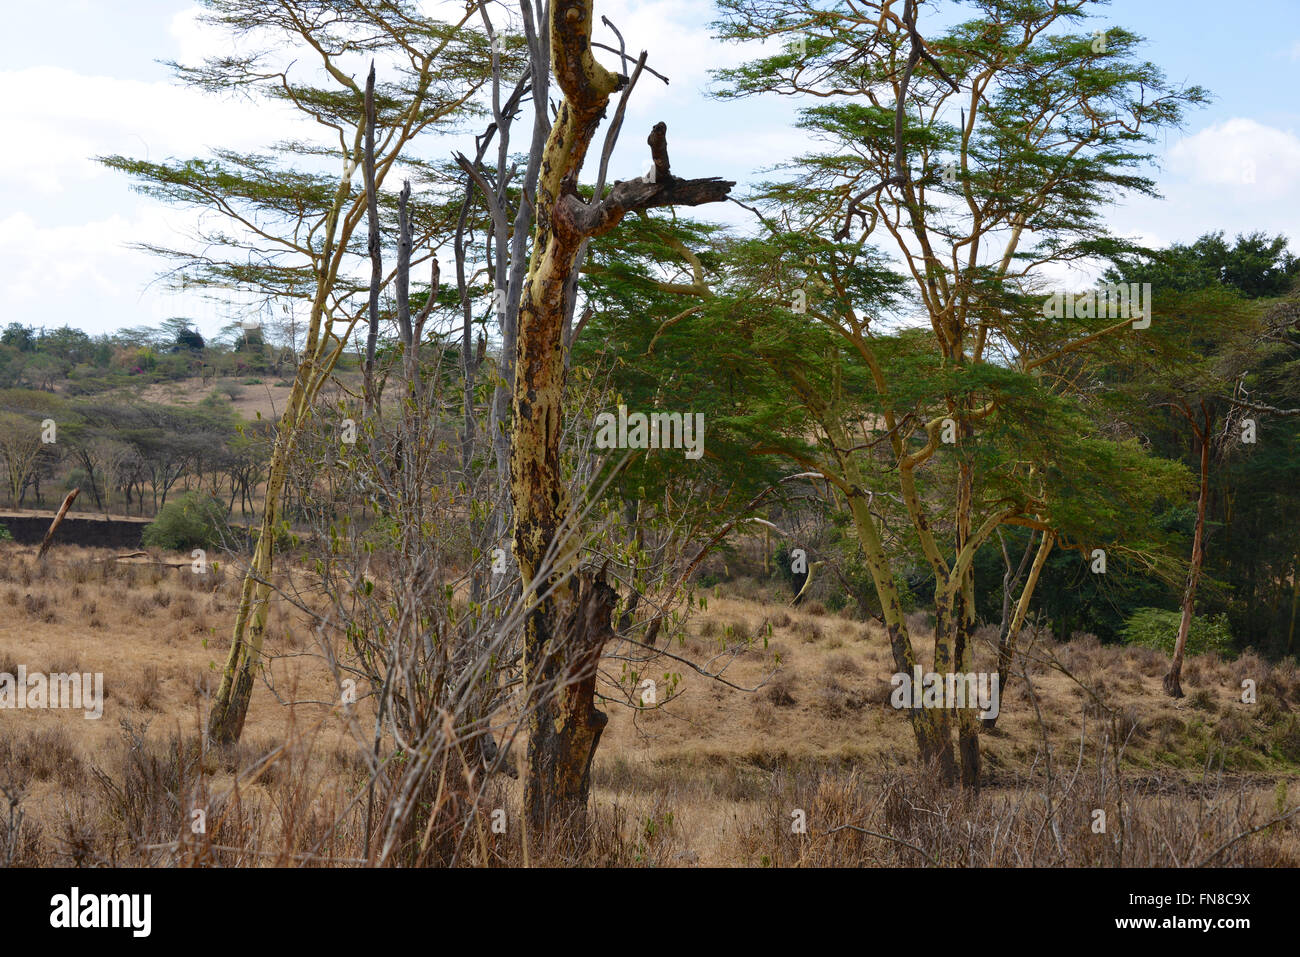 Afrique : Kenya : un bosquet d'arbres de la fièvre jaune (vachellia xanthophloea) dans le parc national de Nairobi Banque D'Images